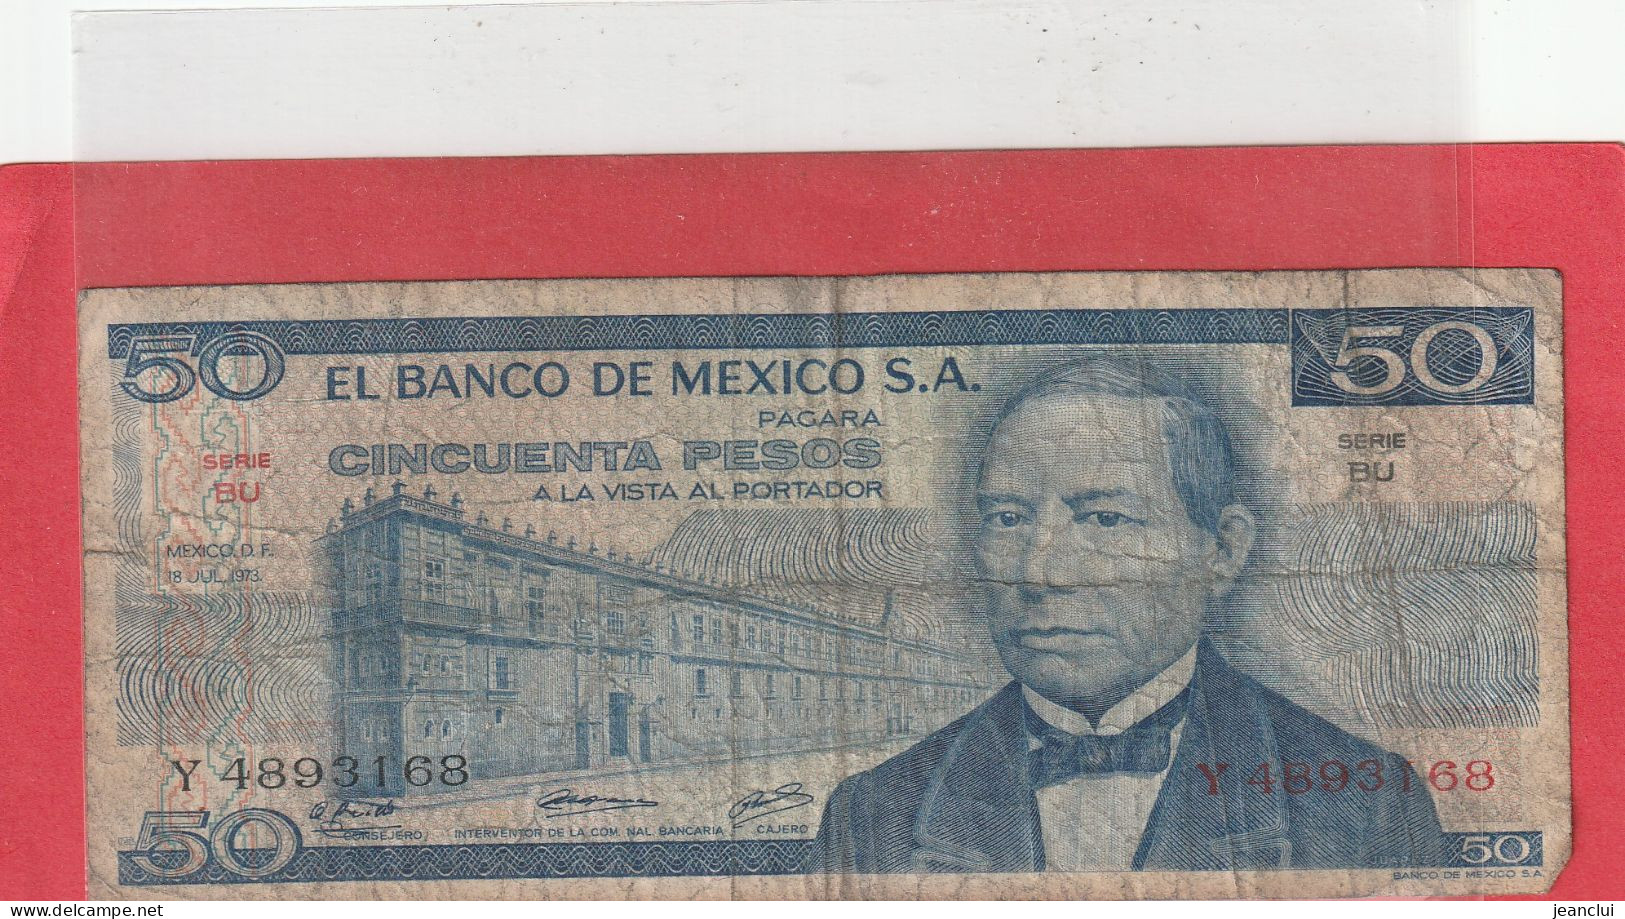 EL BANCO DE MEXICO S.A.  .  50 PESOS  .  18-7-1973  .  N°   Y 4893168 .  2 SCANNES  .  BILLET TRES USITE - Mexico